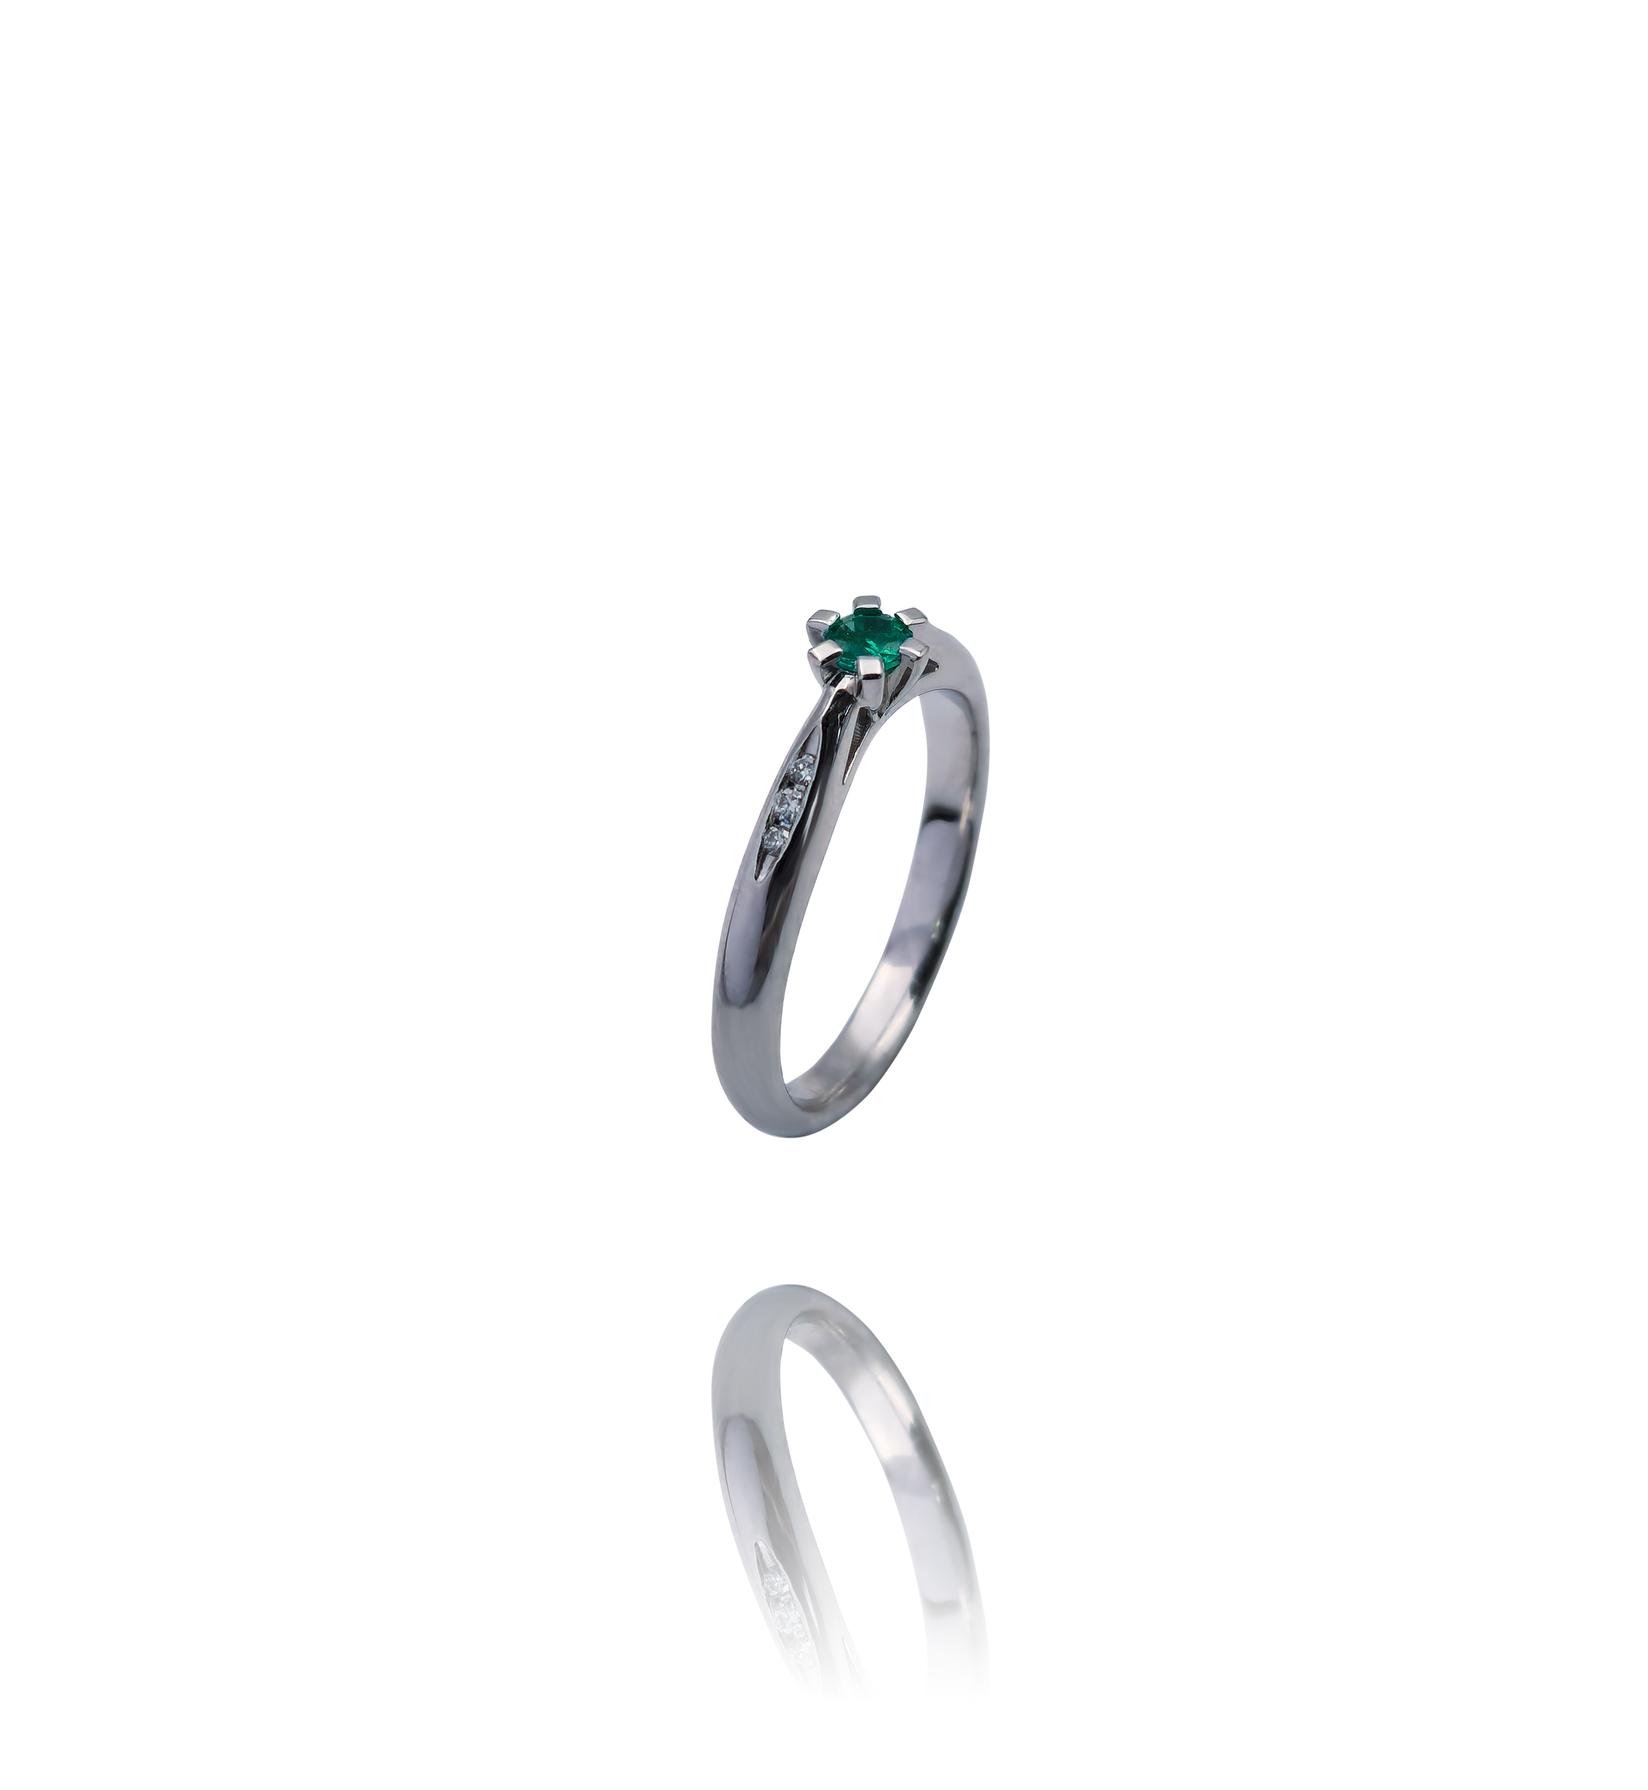 Selected image for Ženski prsten od Belog zlata sa Brilijantima i Smaragdom, 585, 15mm